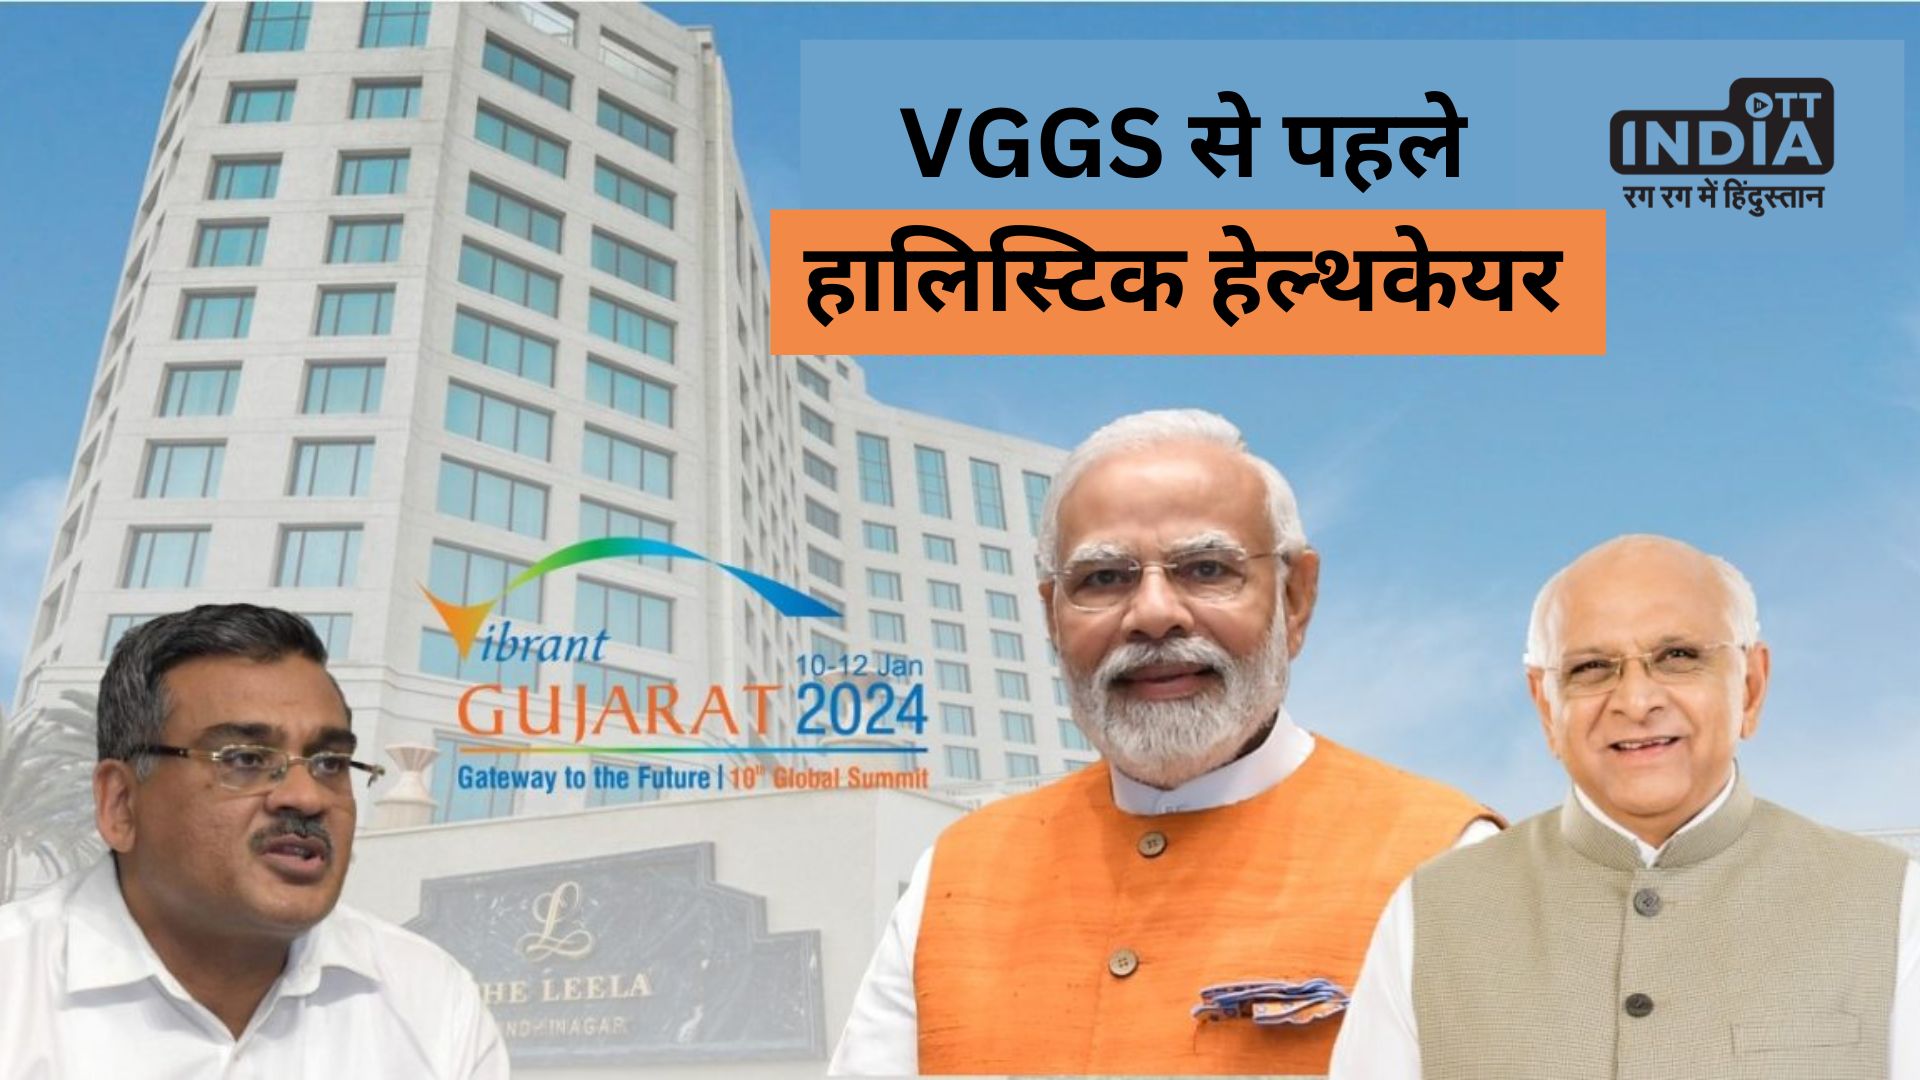 VGGS 2024 से पहले गांधीनगर में समग्र स्वास्थ्य देखभाल पर एक पूर्व शिखर सम्मेलन किया जाएगा आयोजित